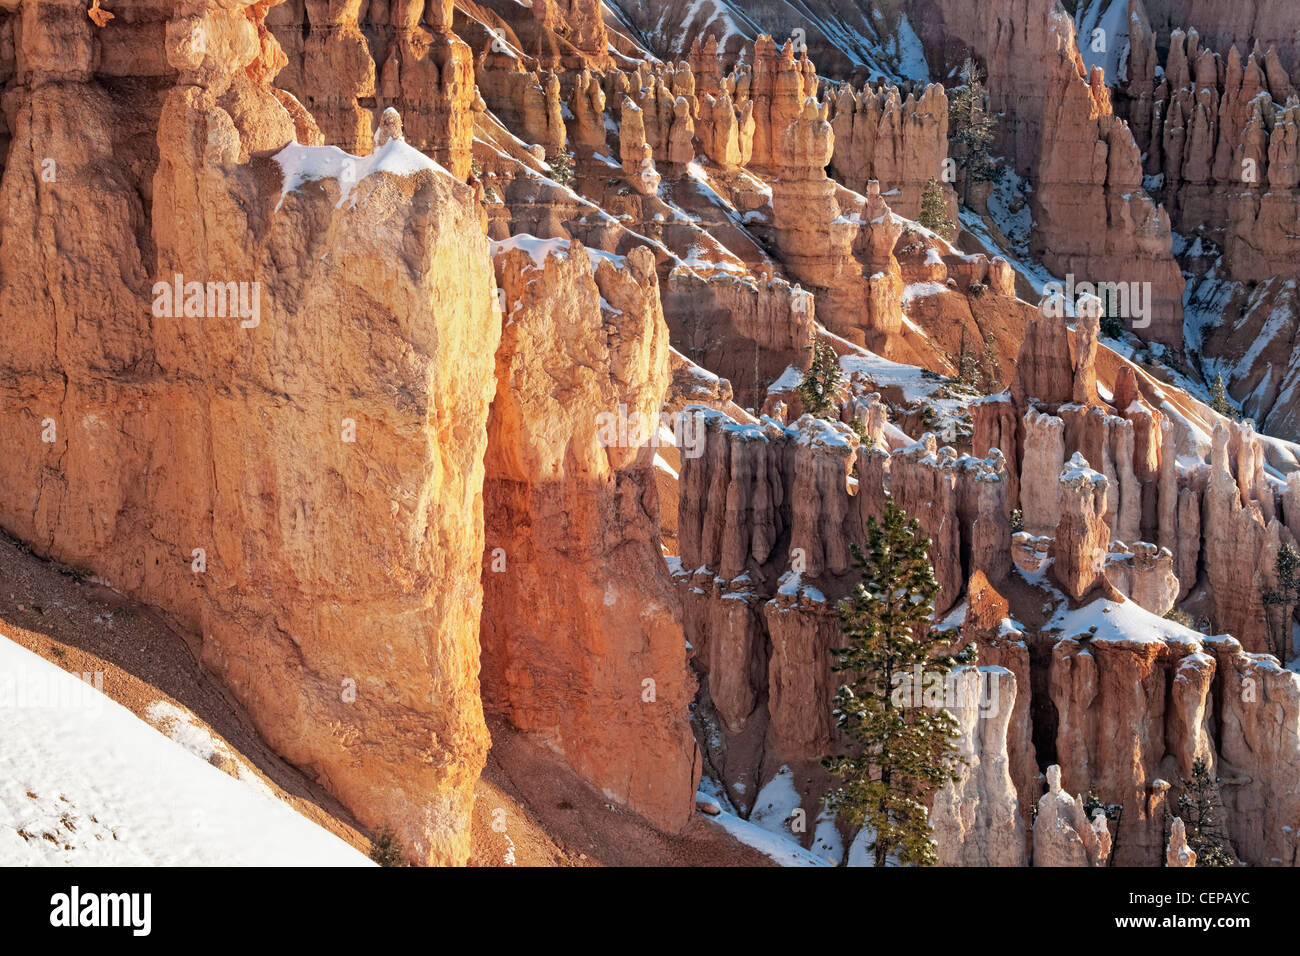 La lumière réfléchissante éclaire les nombreuses cheminées avec des chutes de neige d'automne de Sunset Point dans l'Utah, le Parc National de Bryce Canyon. Banque D'Images